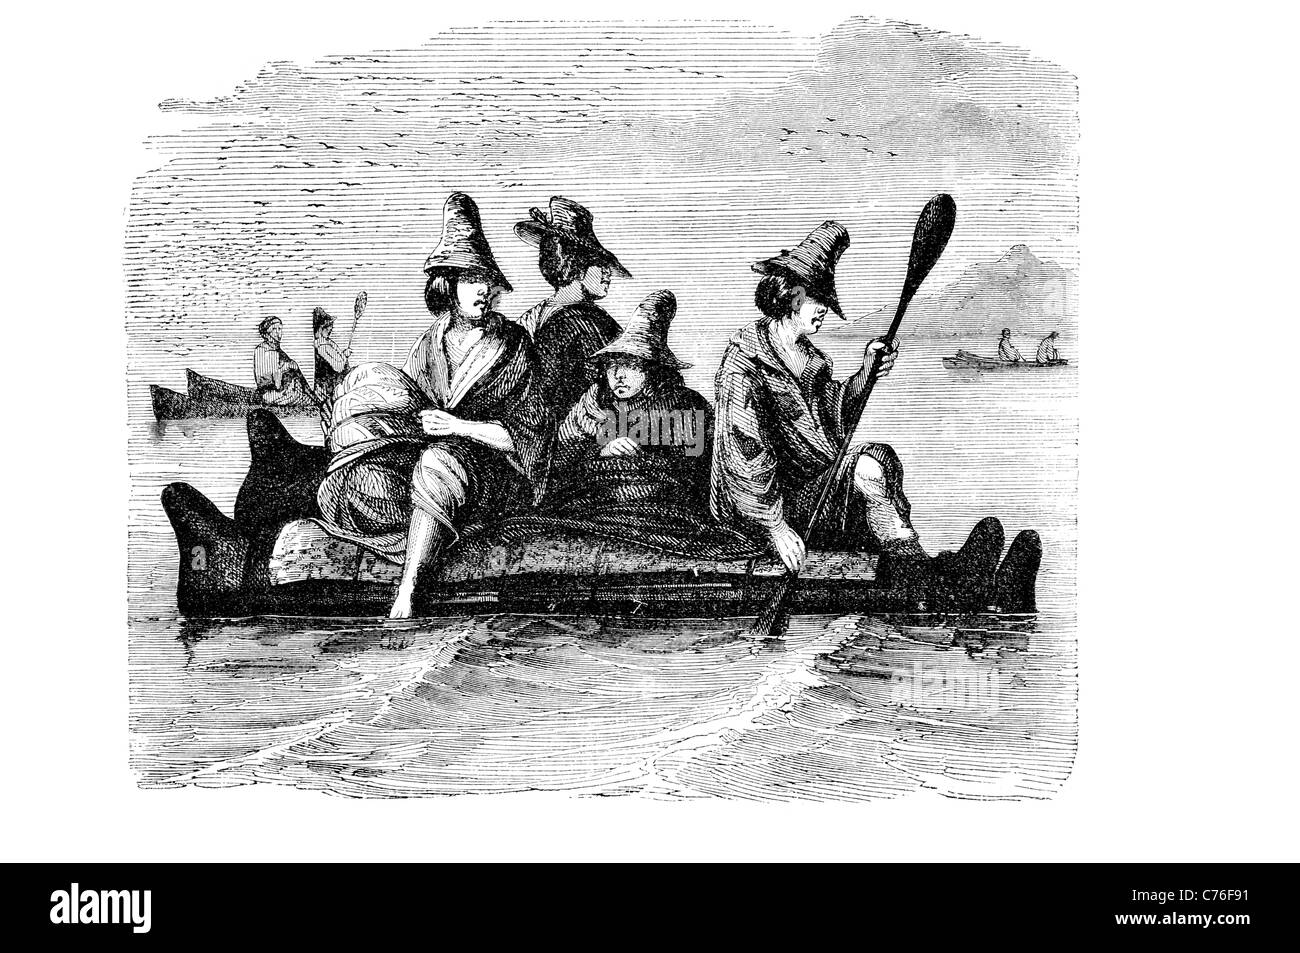 La Balsa Barco Barco pre colombinas la civilización sudamericana entramado de juncos de totora reed bullrush canoa botes de pesca los buques paddle remo Foto de stock